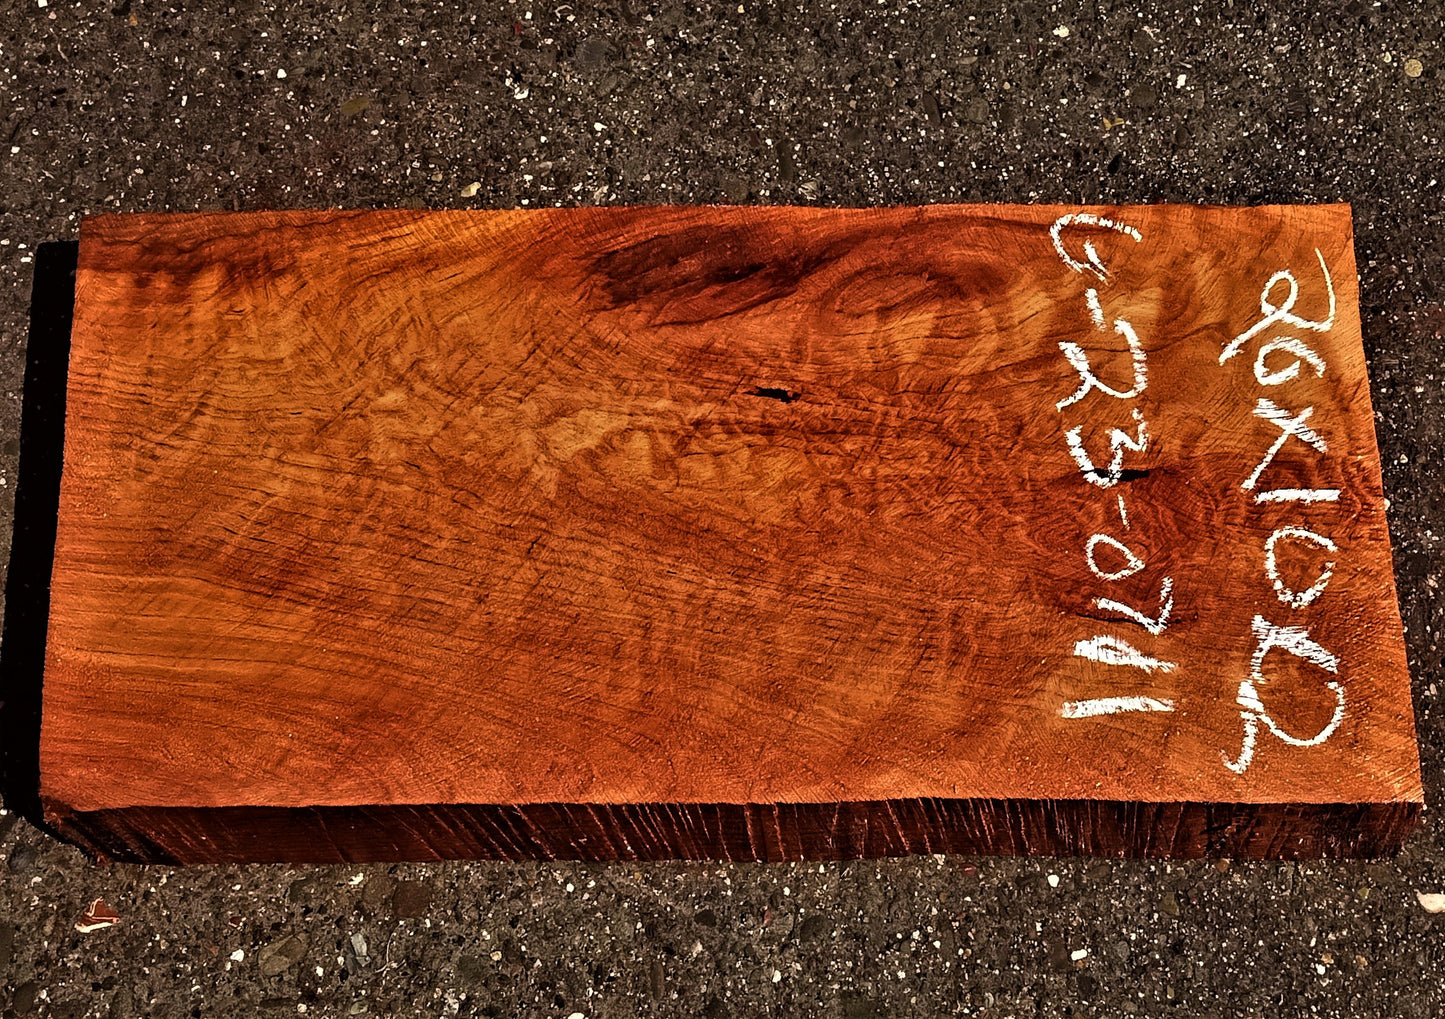 Quilted redwood | guitar billet | wood turning | DIY crafts | g23-0711